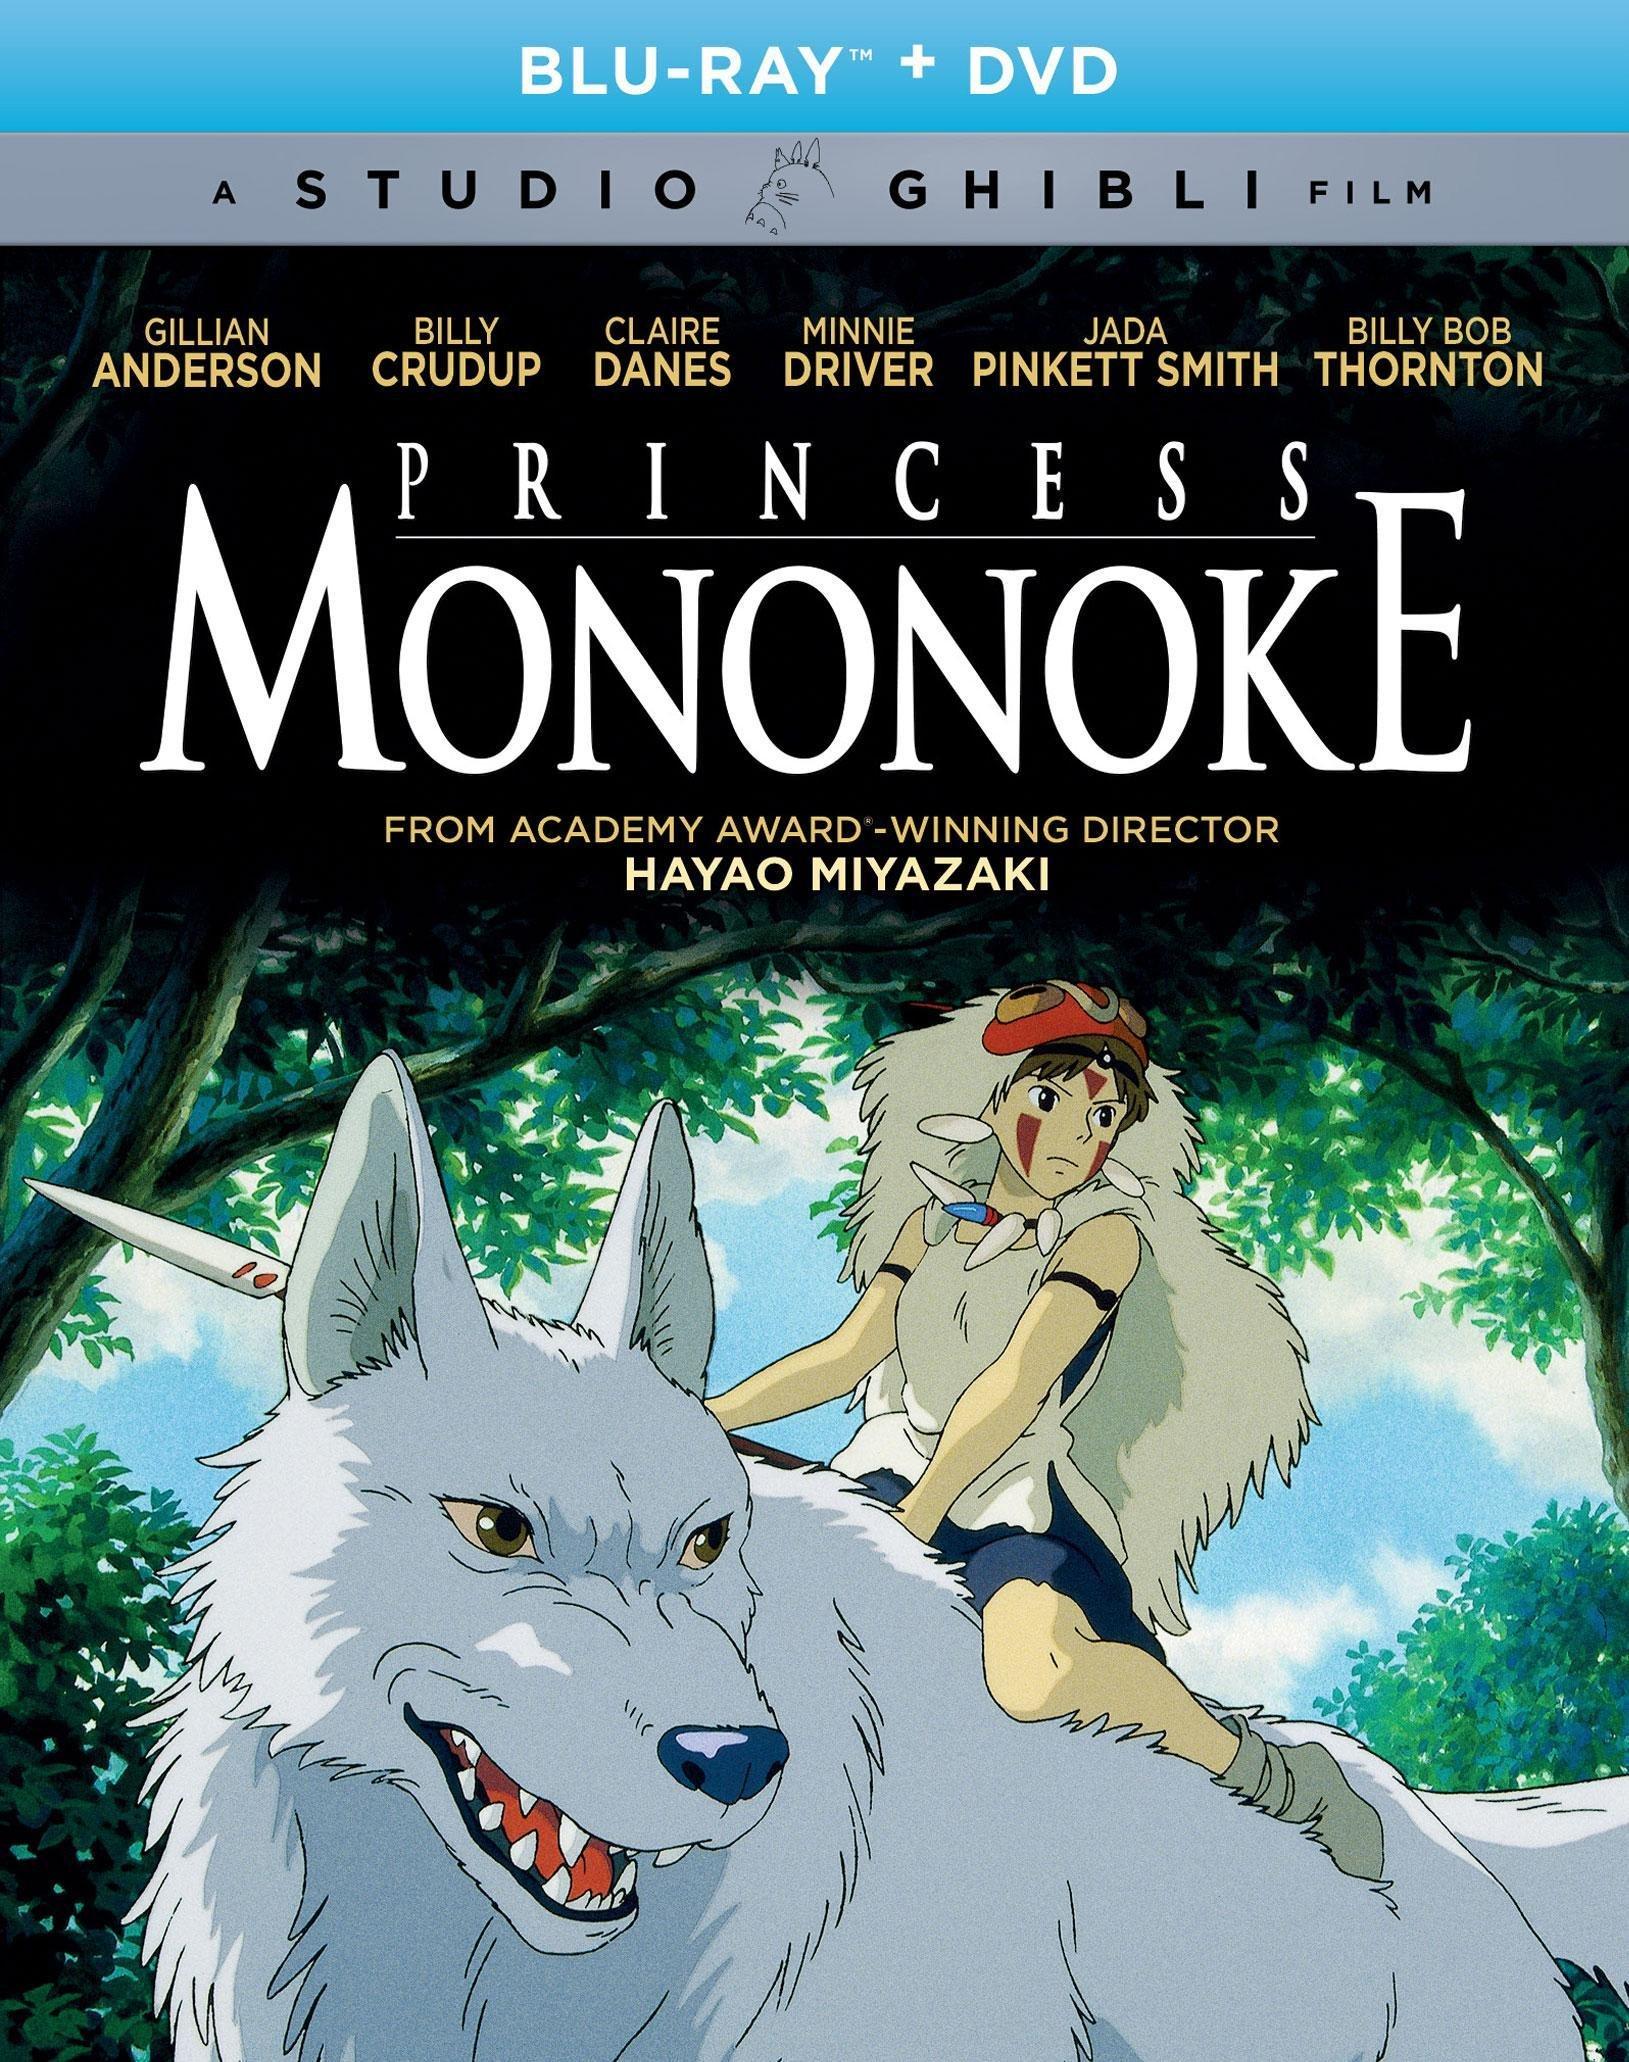 Princess Mononoke - Blu-ray and DVD